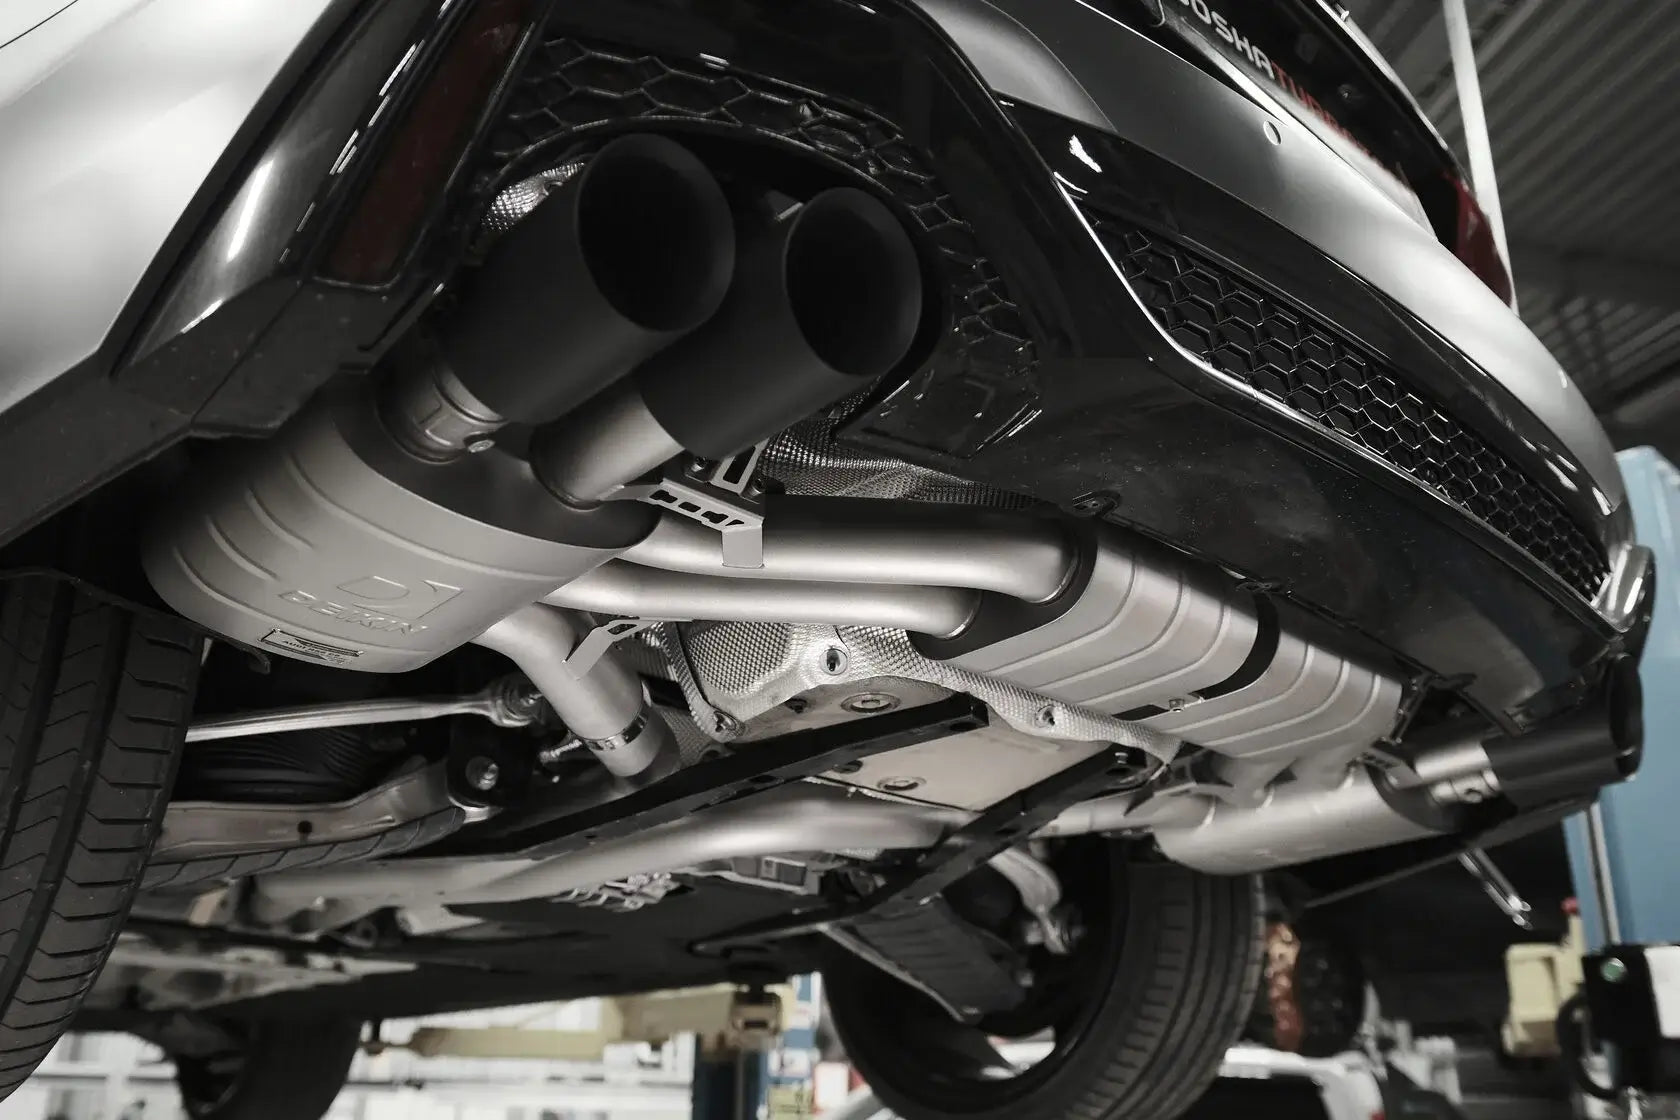 DEIKIN 10-AUDI.RS6.C8-ES-Ti-06 Exhaust system Titan for Audi RS6 C8 Black Ceramic Photo-4 